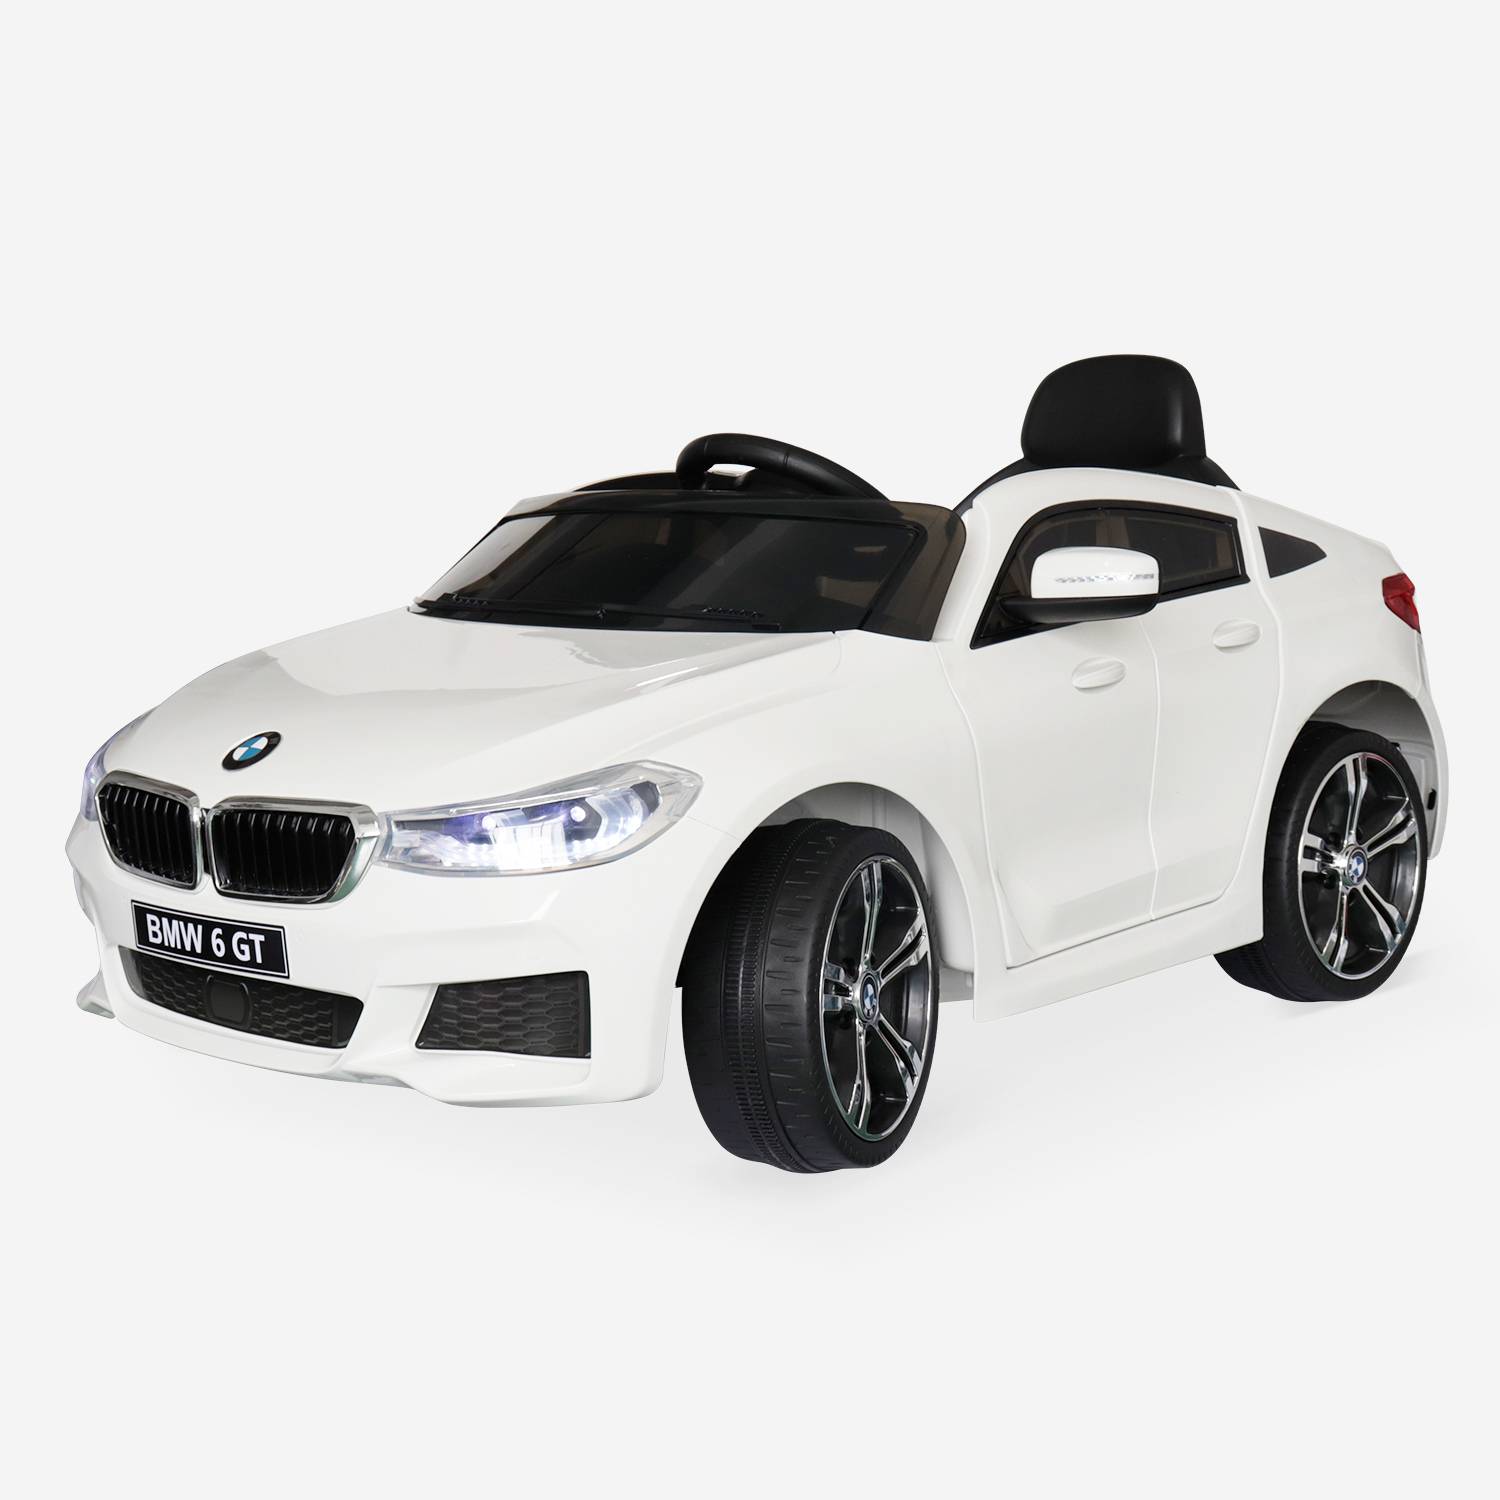 BMW Serie 6 GT Gran Turismo bianca, auto elettrica per bambini 12V 4 Ah, 1 posto, con radio e telecomando,sweeek,Photo2